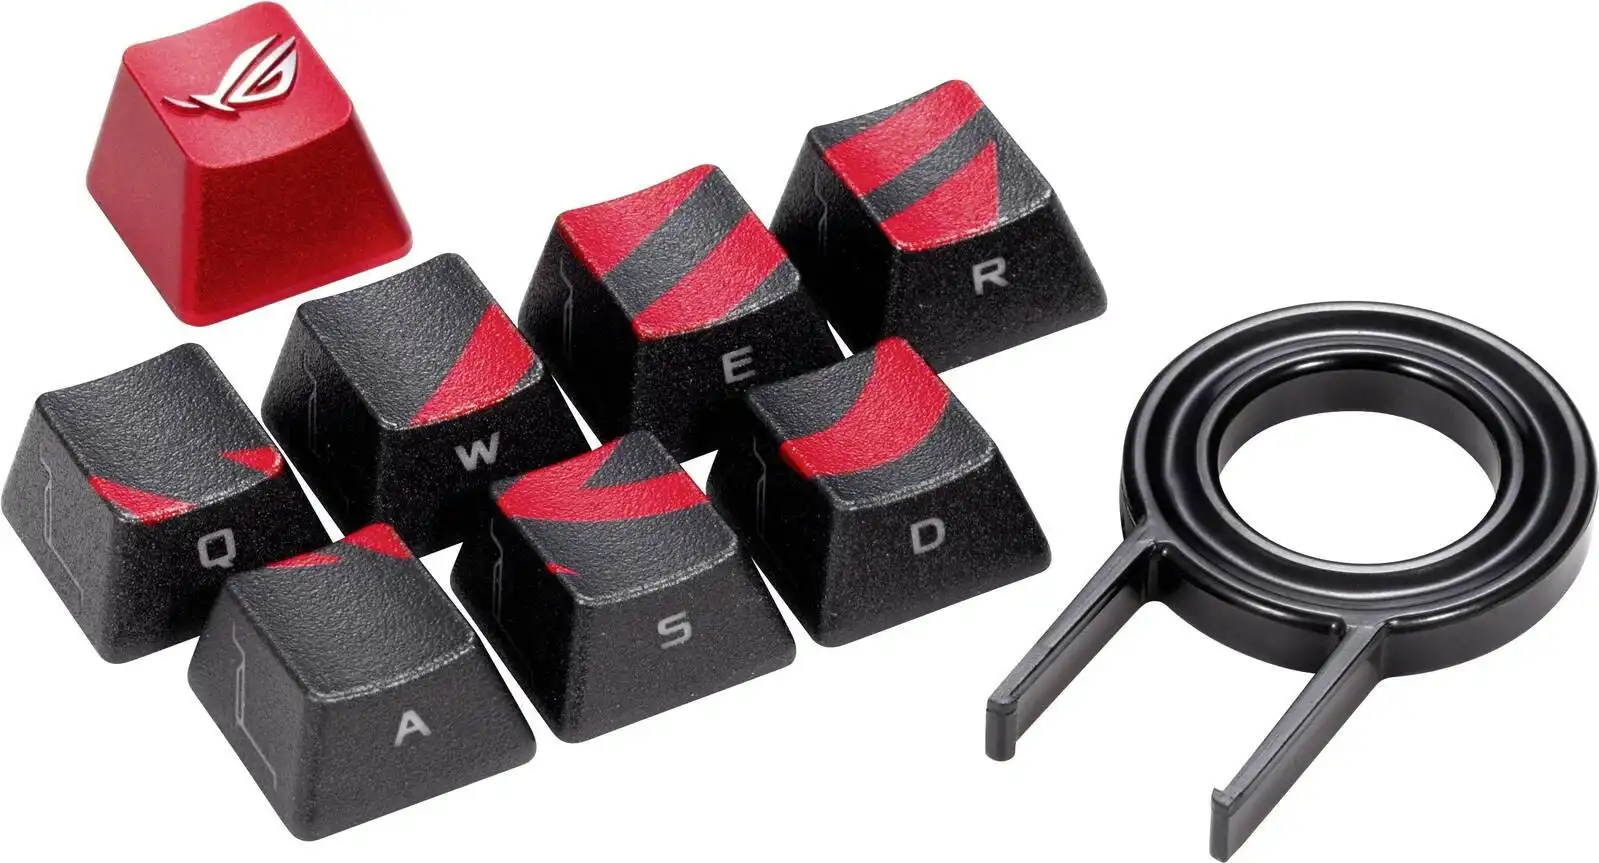 Asus AC02 Rog Gaming Keycap Set Premium Textured Side-Lit For FPS/MOBA Keyboard